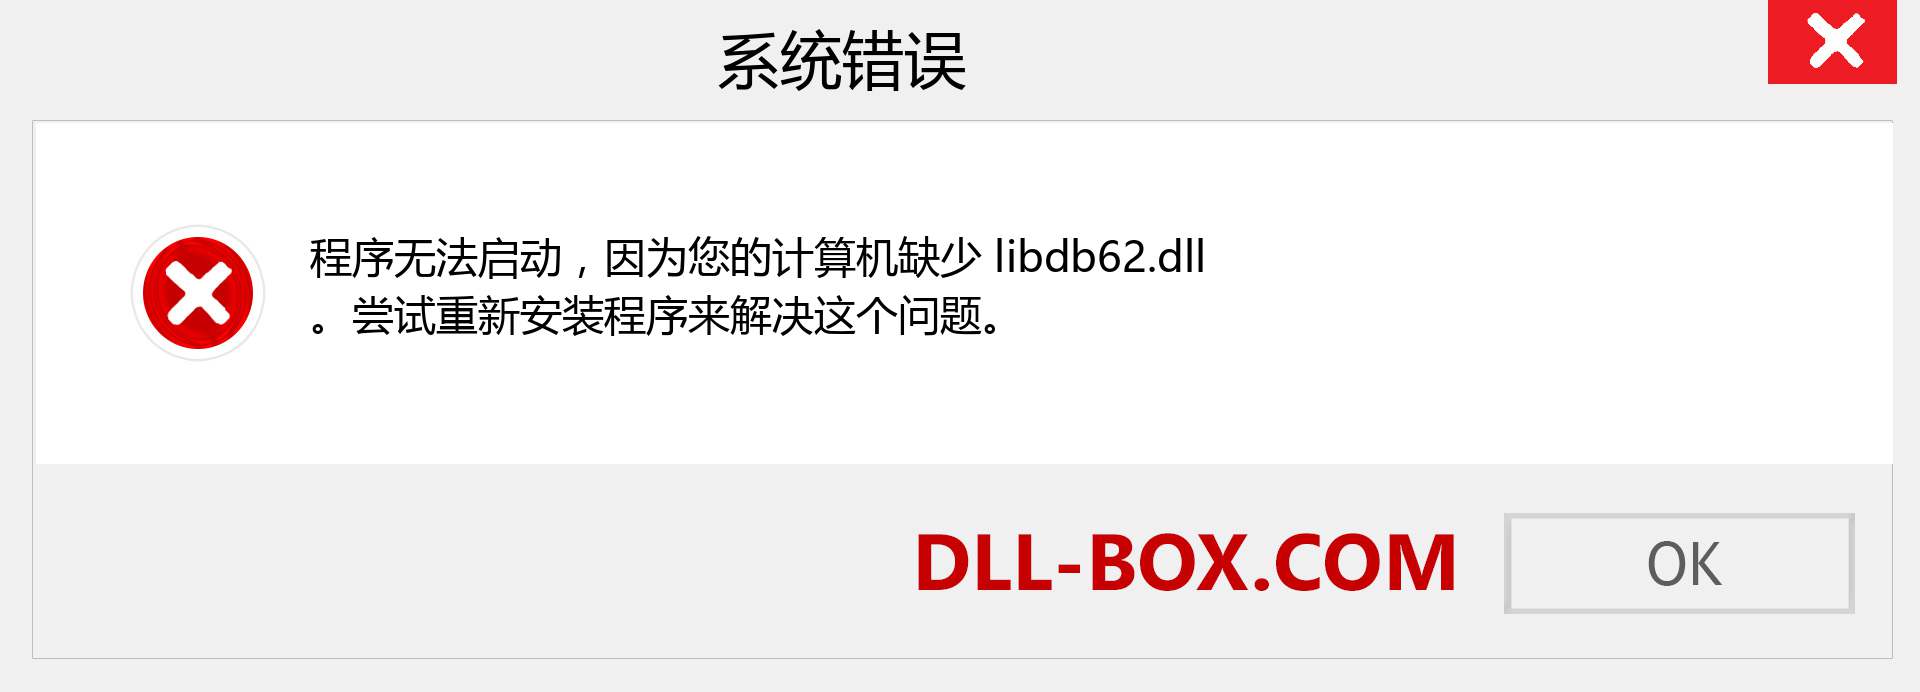 libdb62.dll 文件丢失？。 适用于 Windows 7、8、10 的下载 - 修复 Windows、照片、图像上的 libdb62 dll 丢失错误